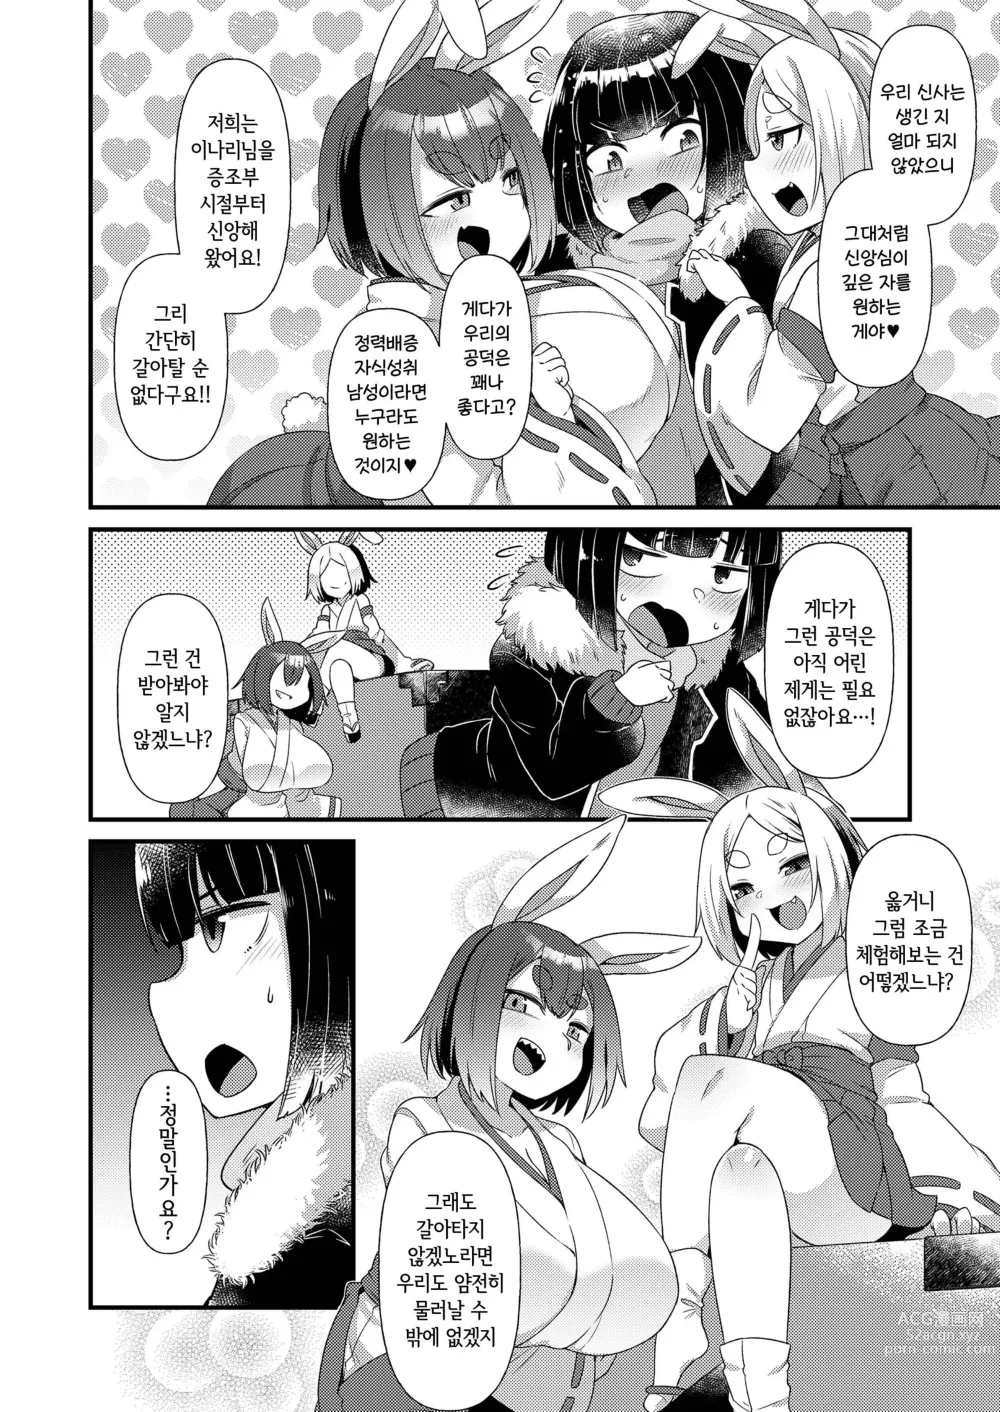 Page 4 of doujinshi 토끼의 신도가 되지 않겠는가?